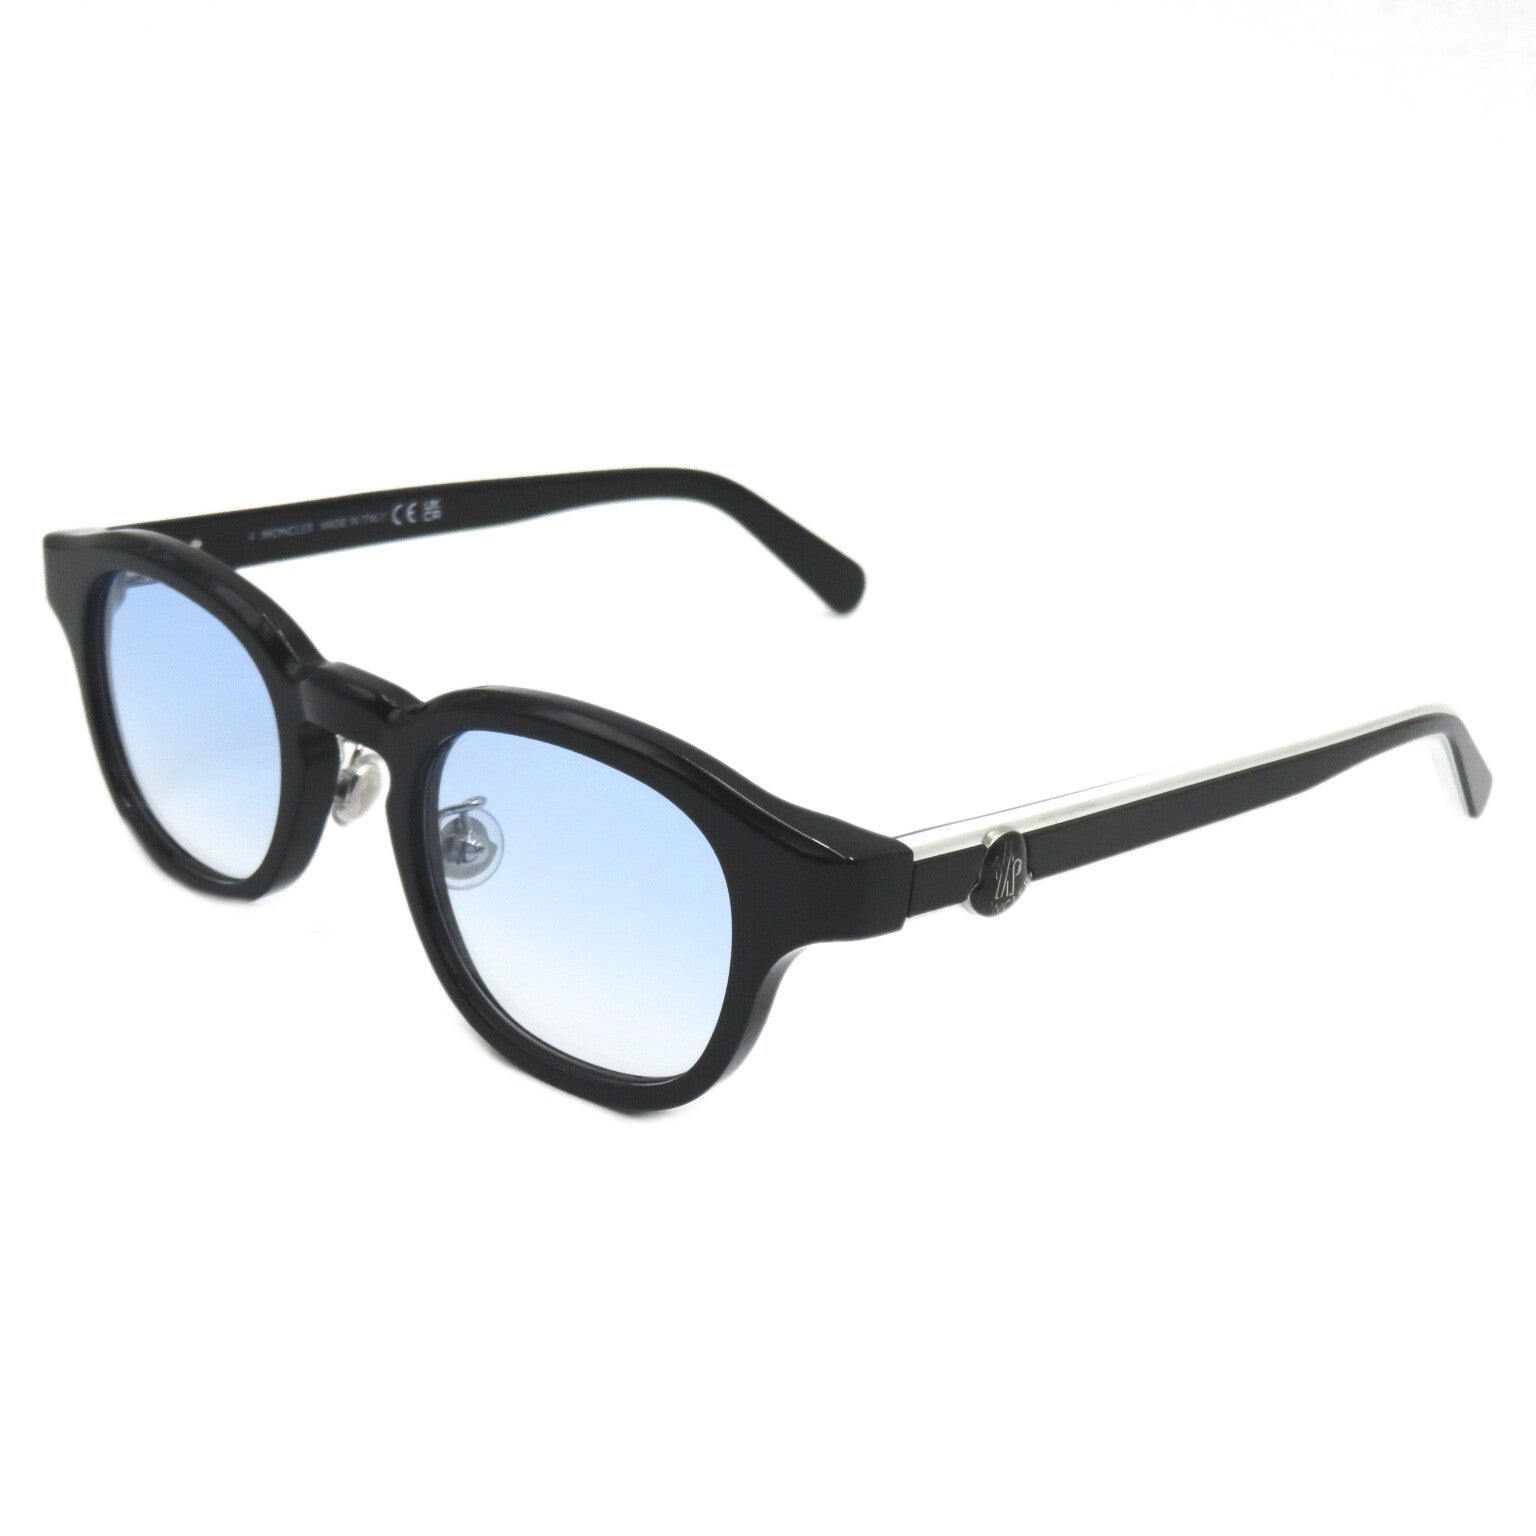 Moncler MONCLER S Glasses    Black / White / Light Blue Lens 5184D 001(46)